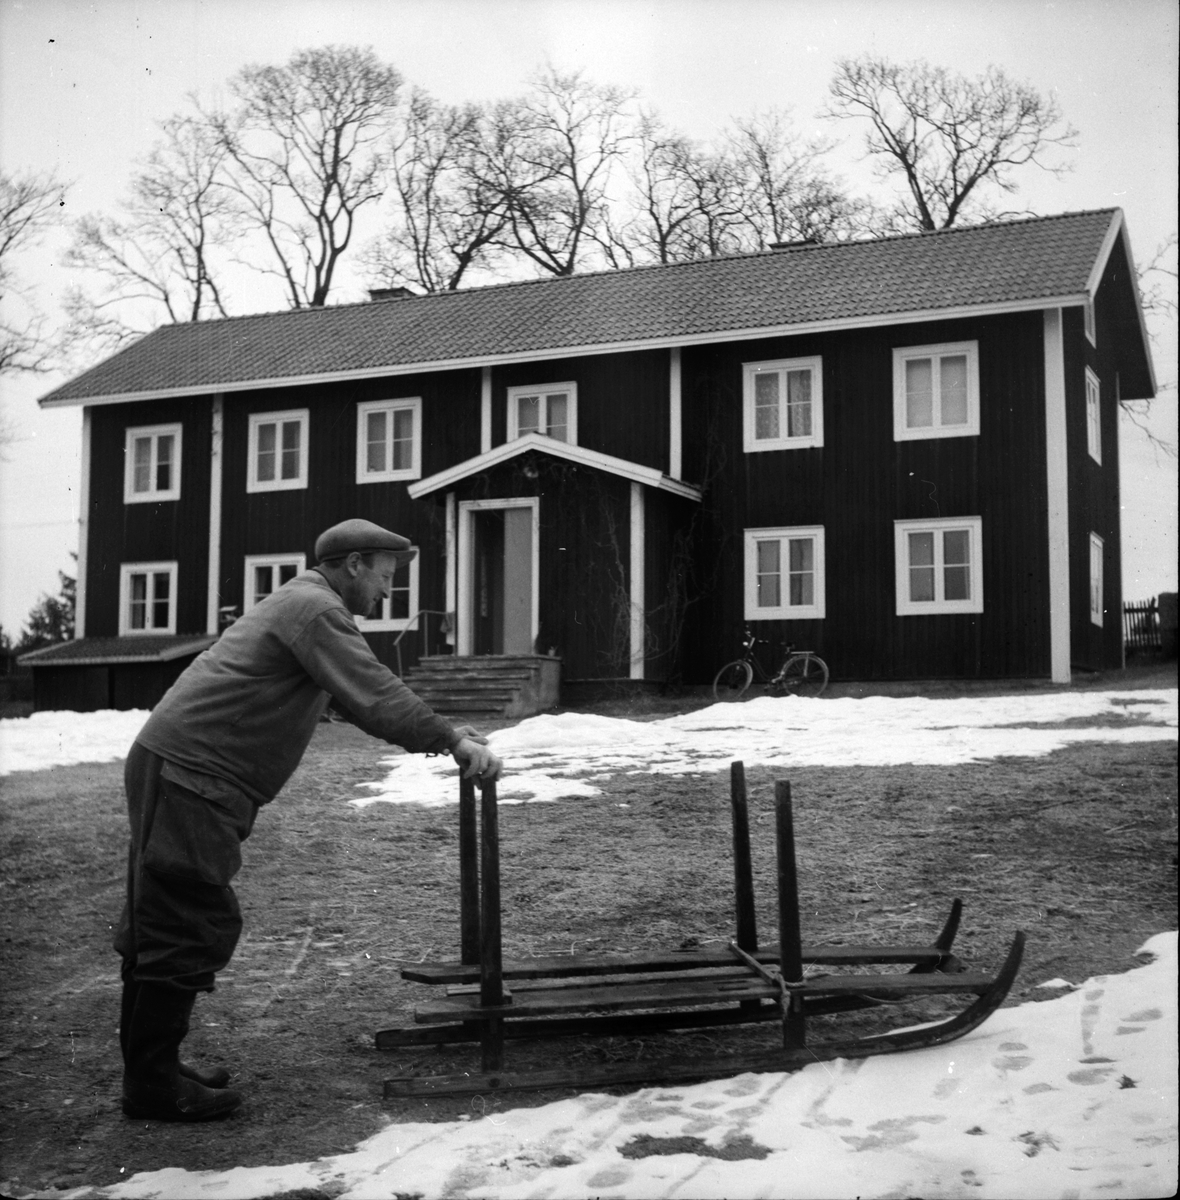 Martin Johansson.
Stråtjära 1957